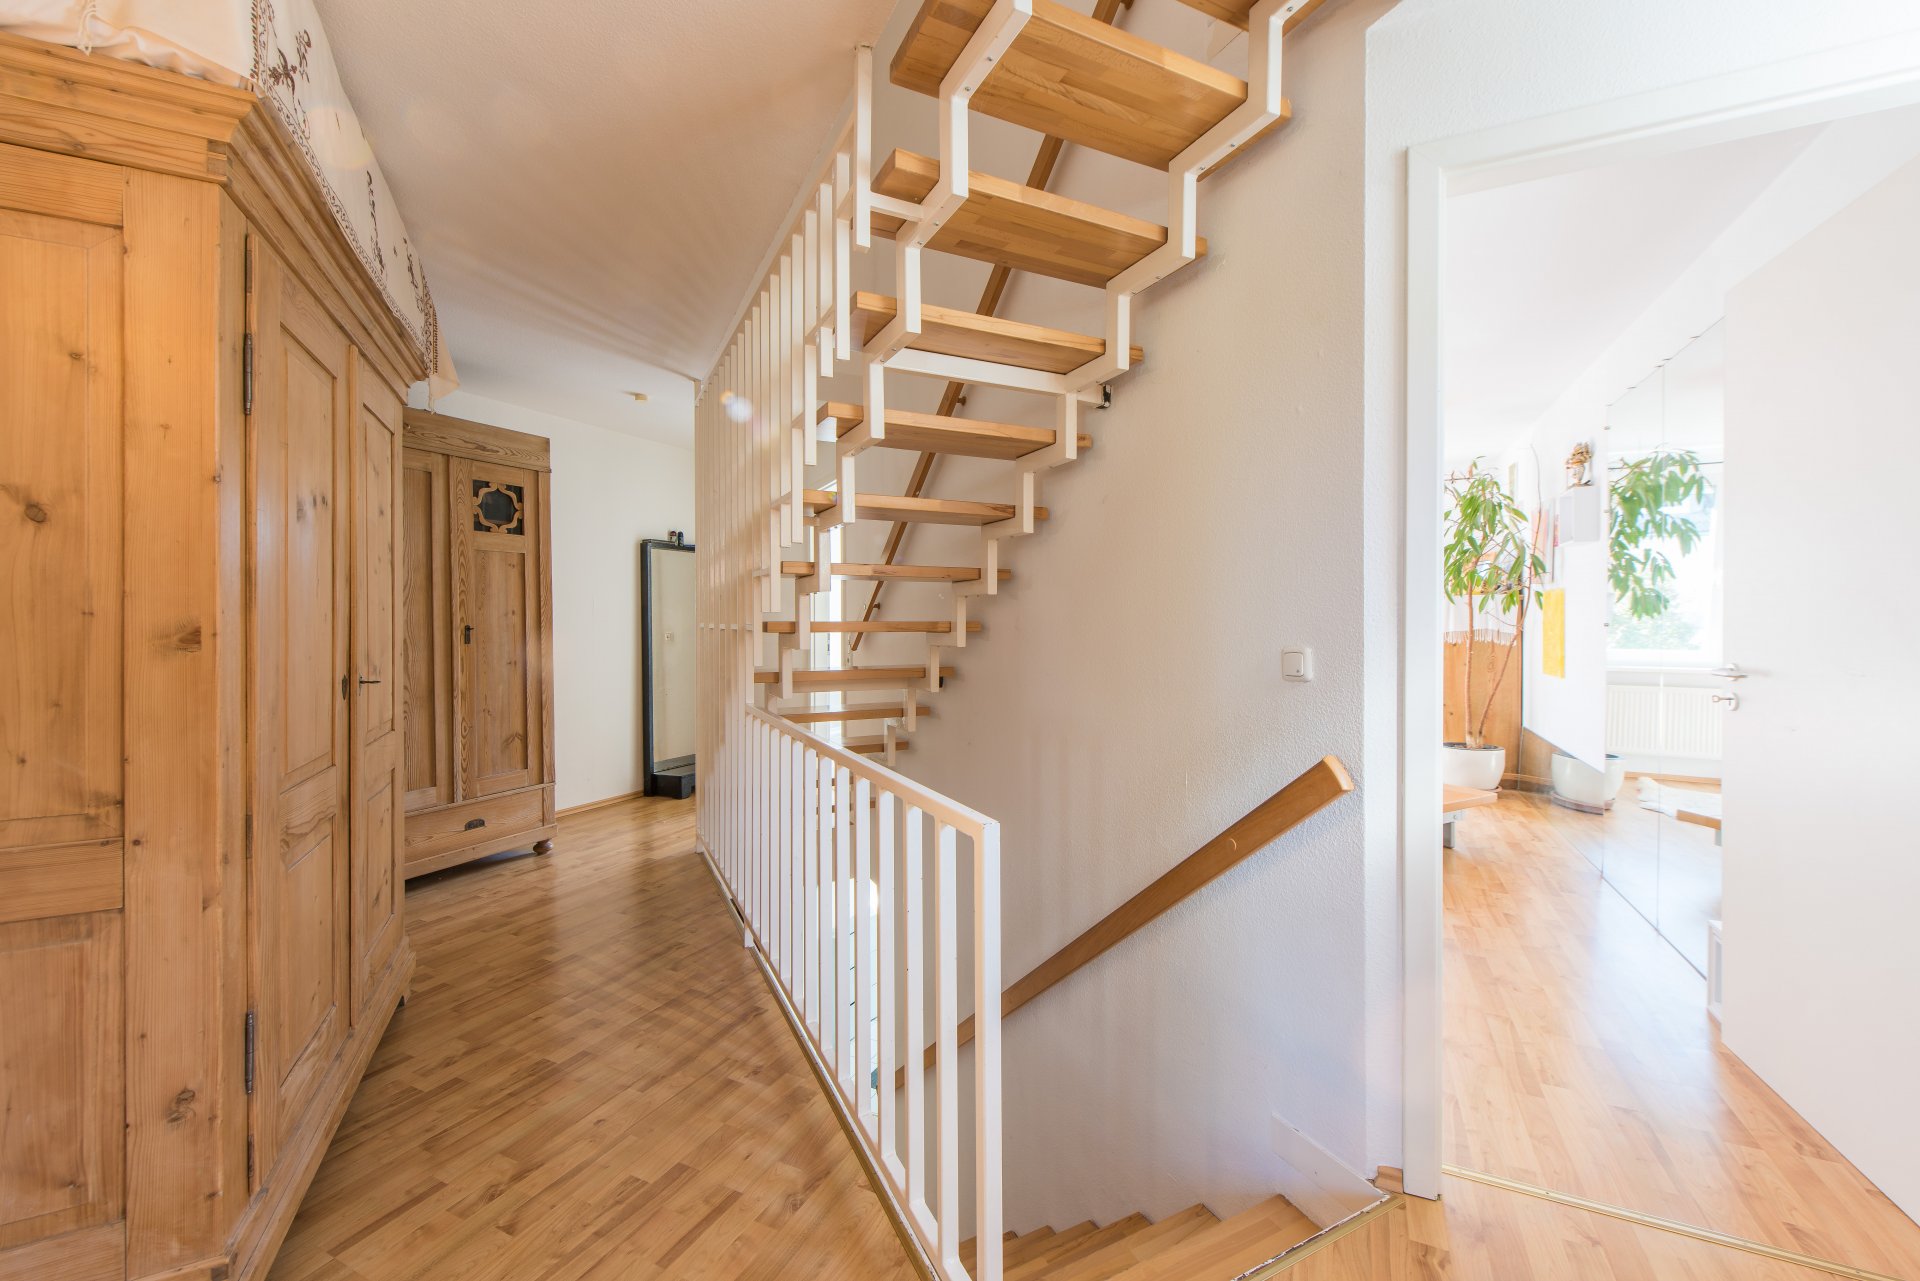 Gerades Treppenhaus sorgt für viel Wohnfläche aufgrund geringer Verkehrswege - Oliver Reifferscheid - Immobilienmakler Darmstadt